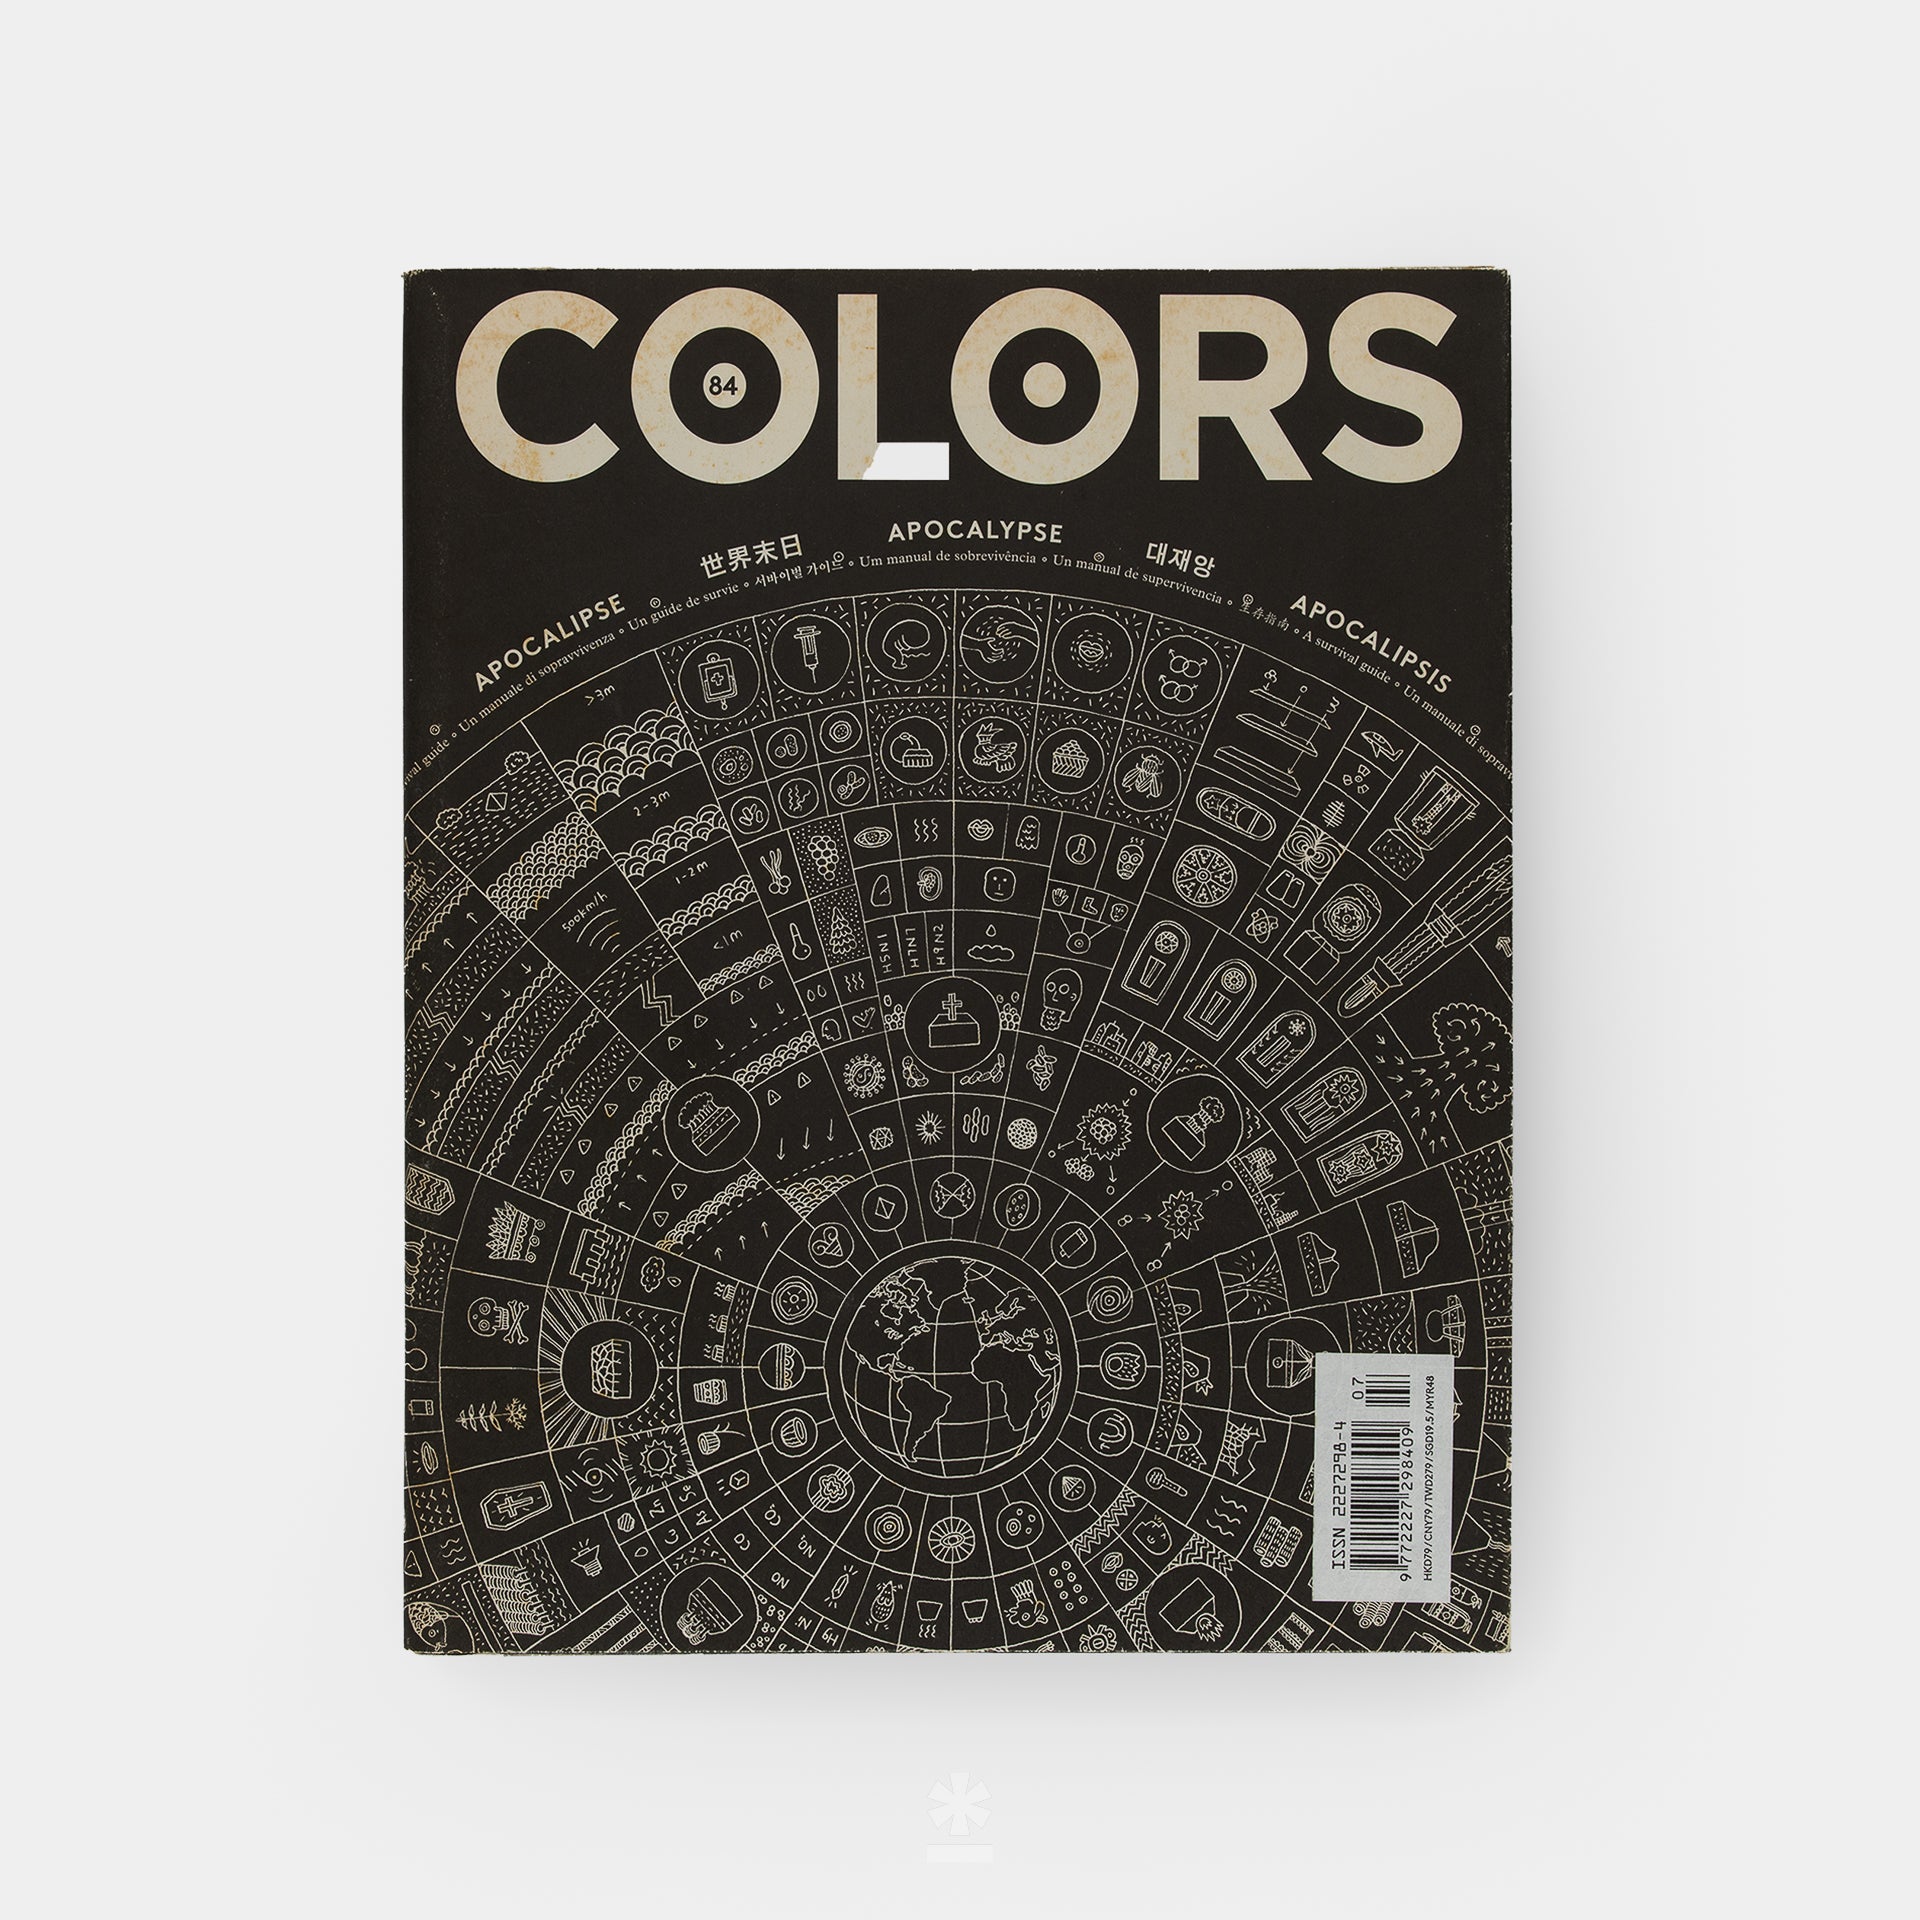 COLORS Magazine: #84 – Apocalypse